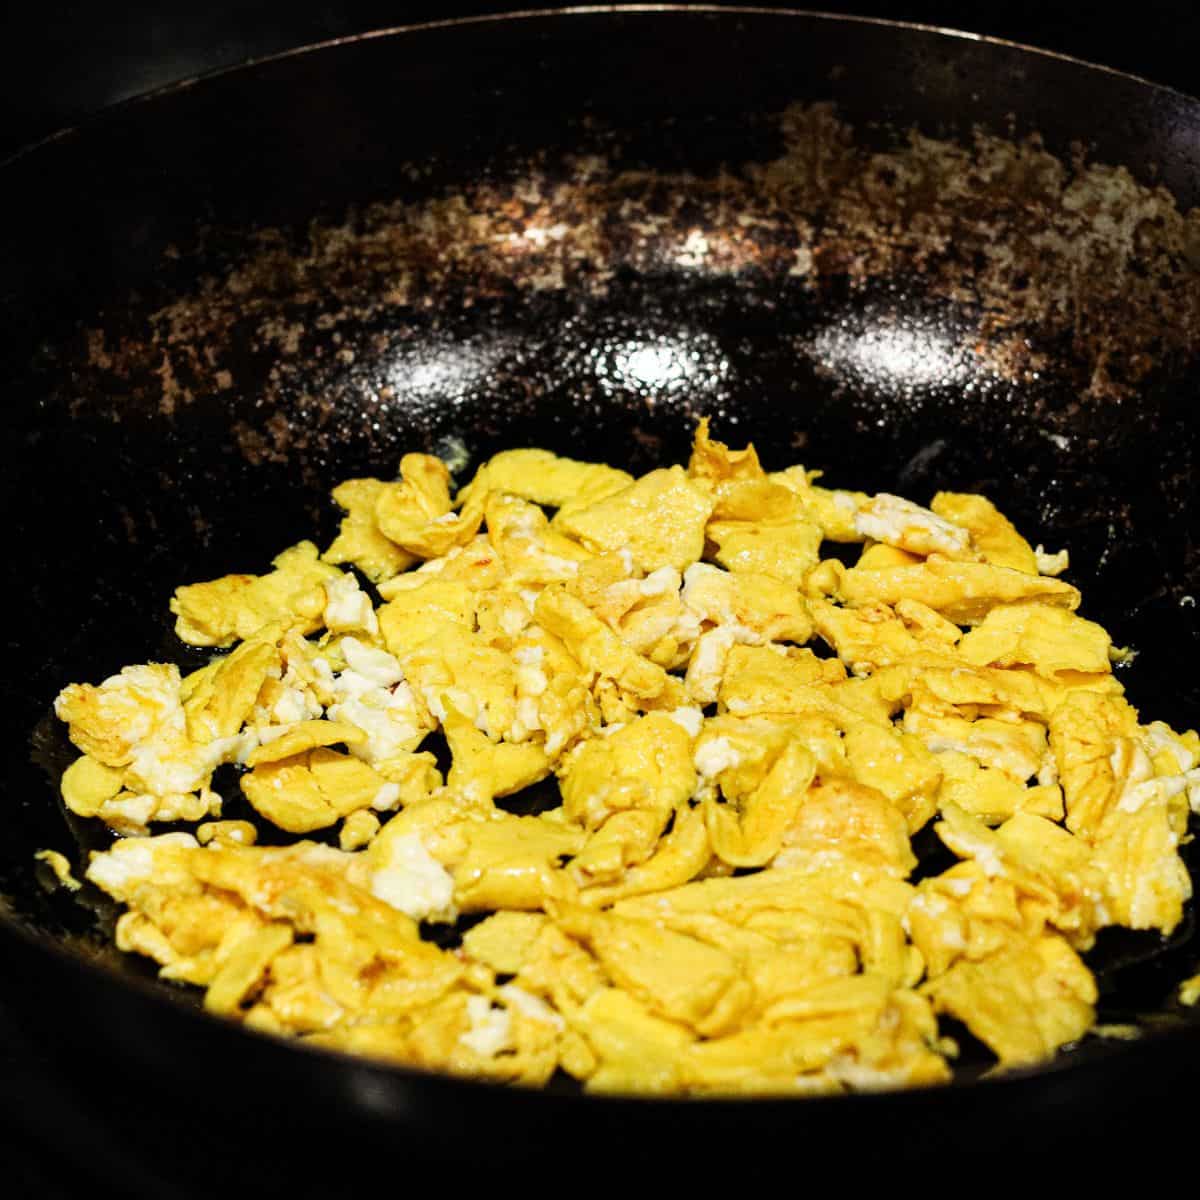 Scramble the egg in a wok.